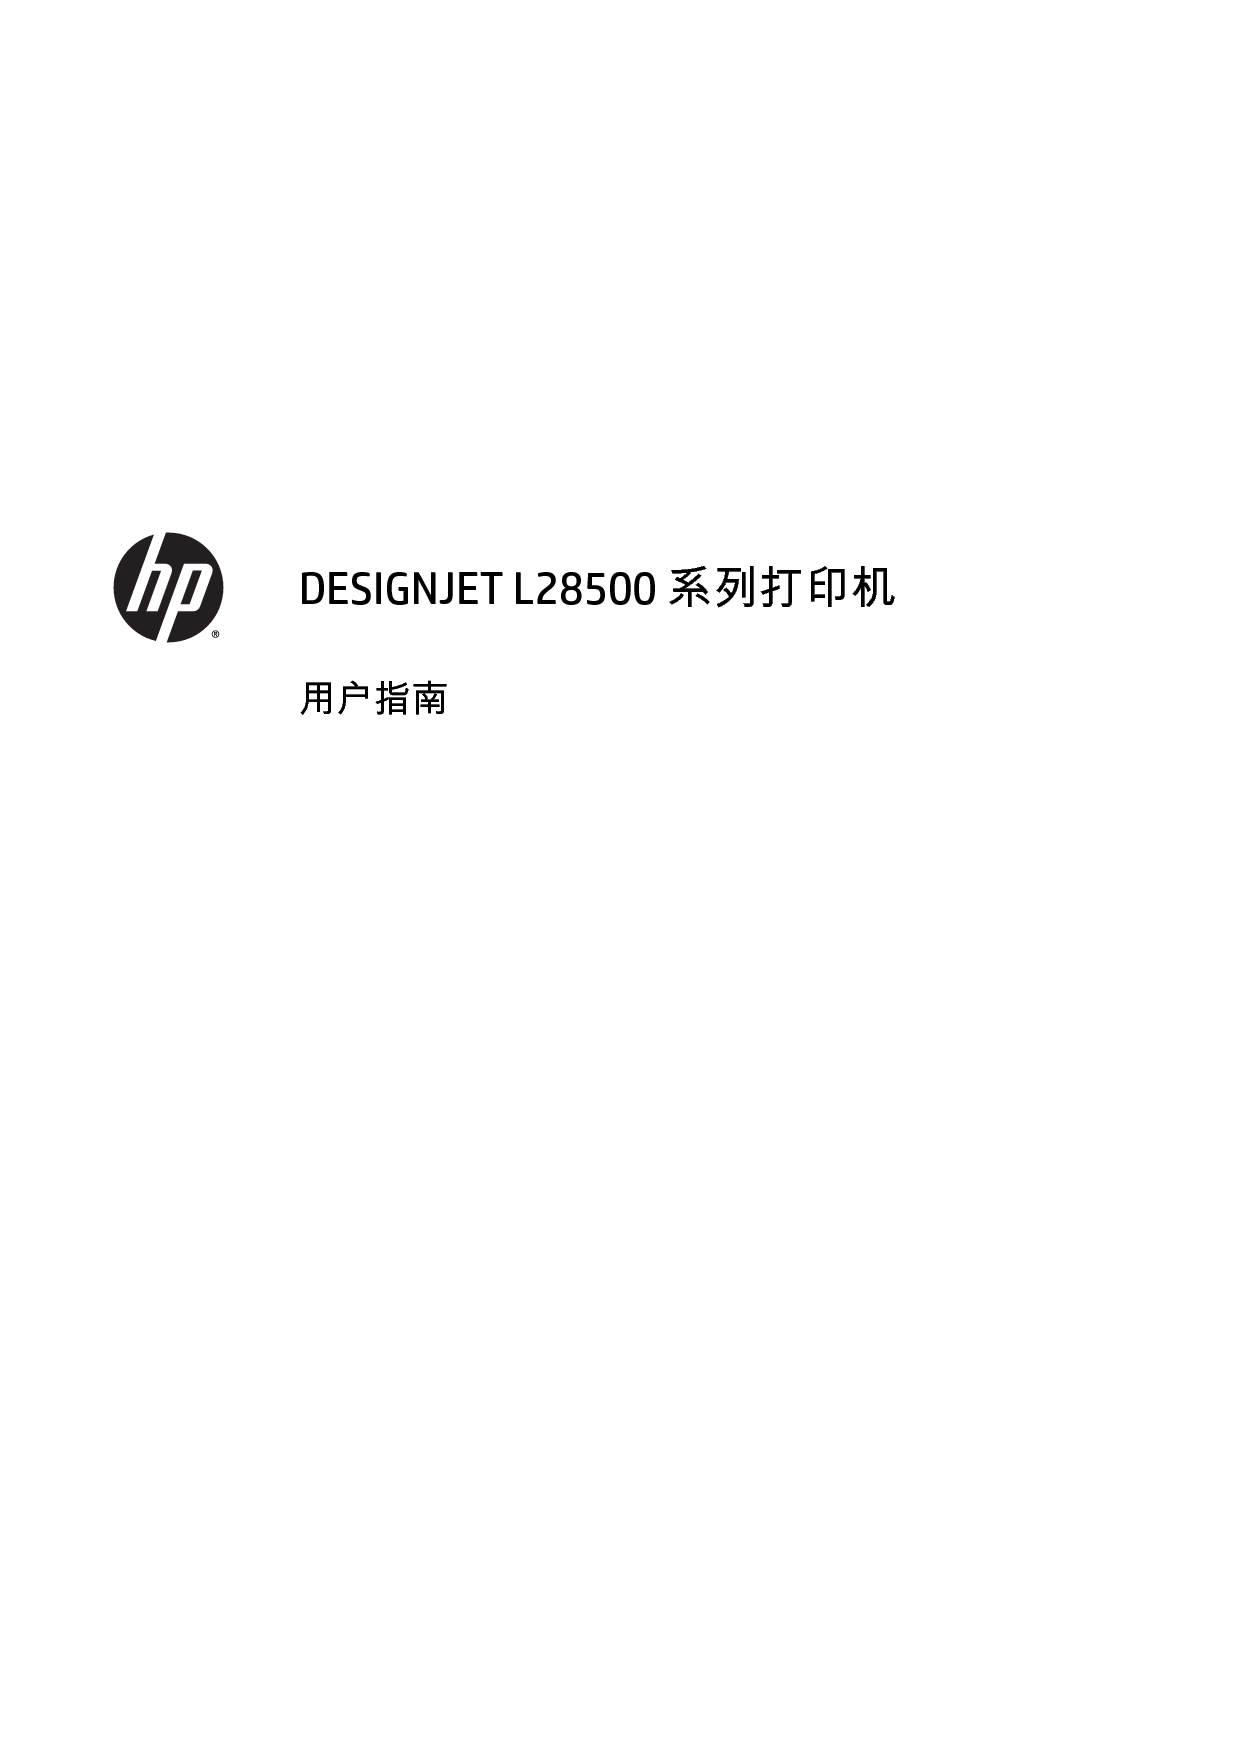 惠普 HP DesignJet L28500 用户指南 封面